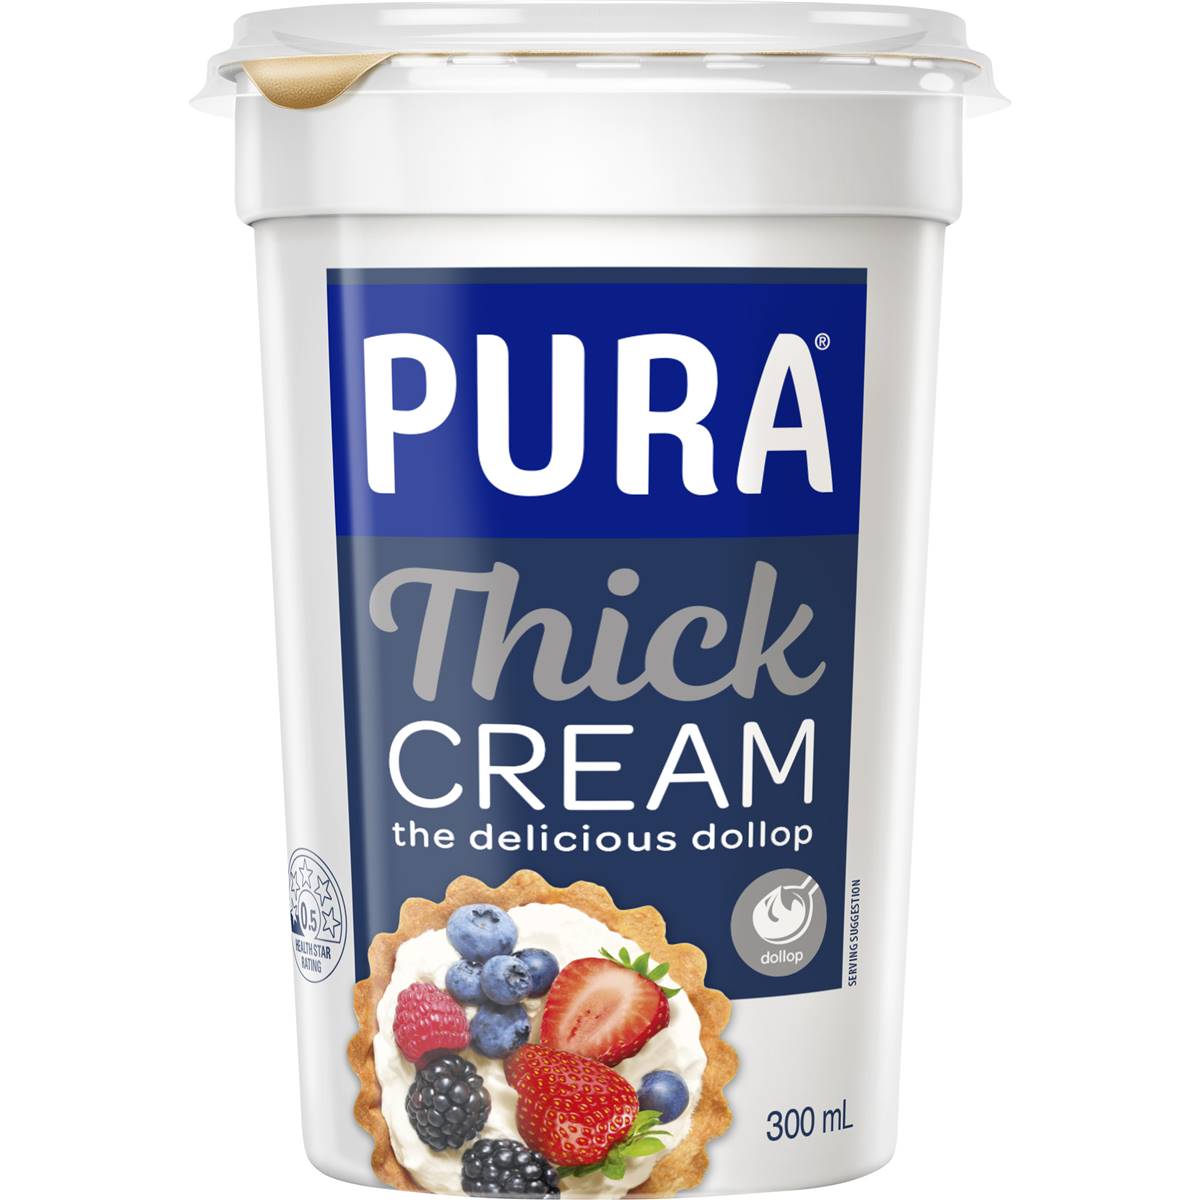 Calories in Pura Thick Cream Dollop